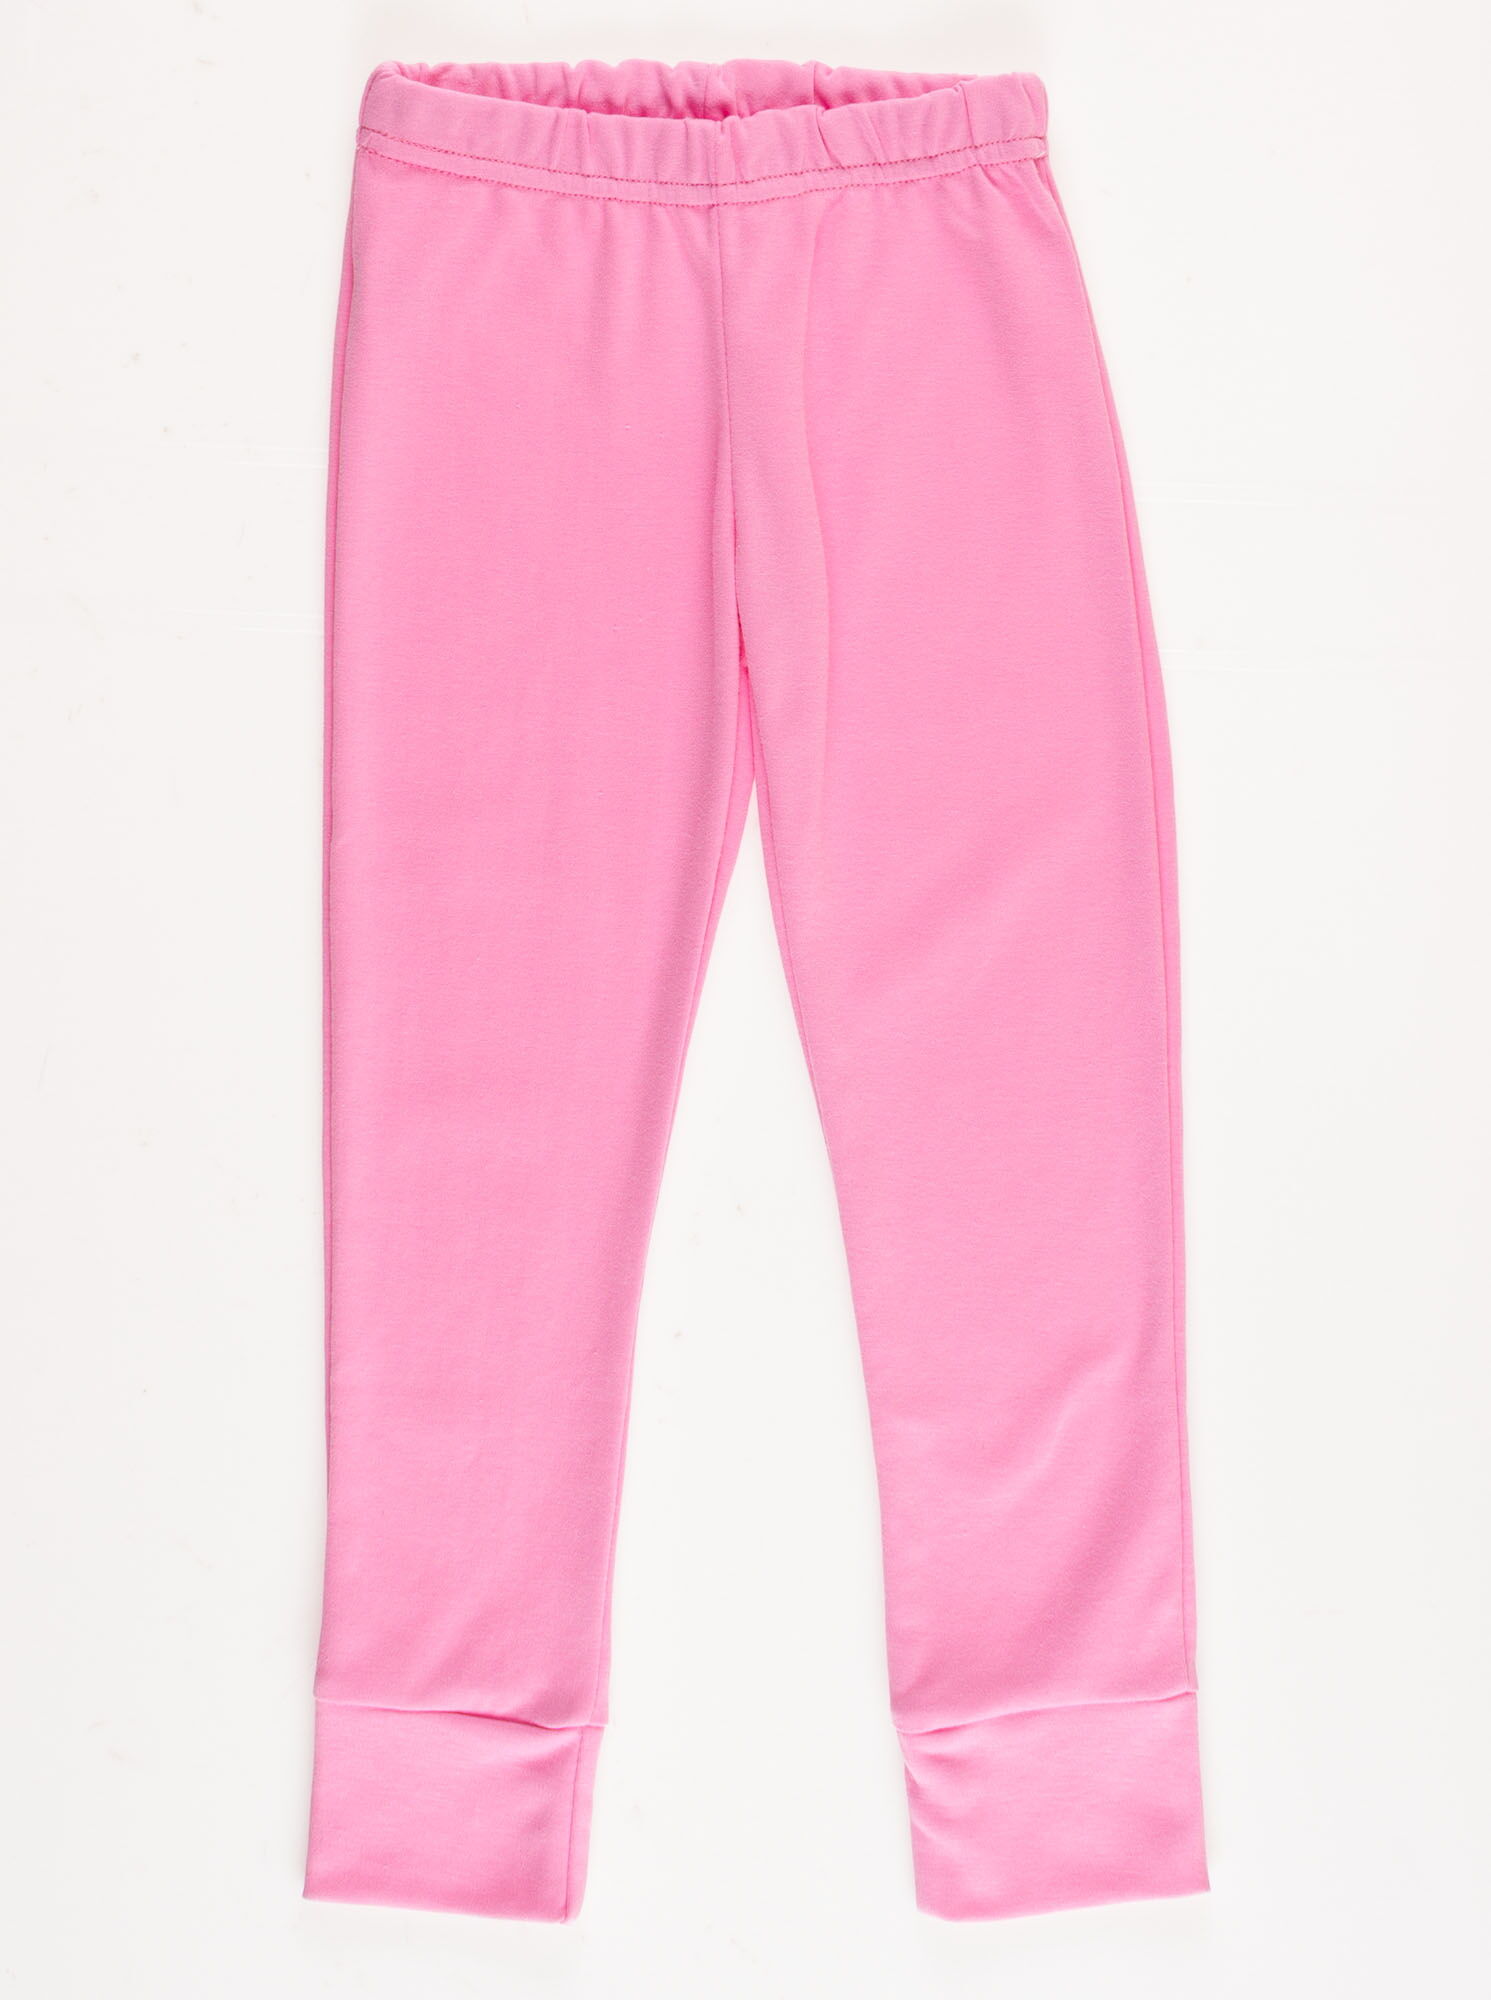 Пижама для девочки Фламинго молочная 245-222 - купить